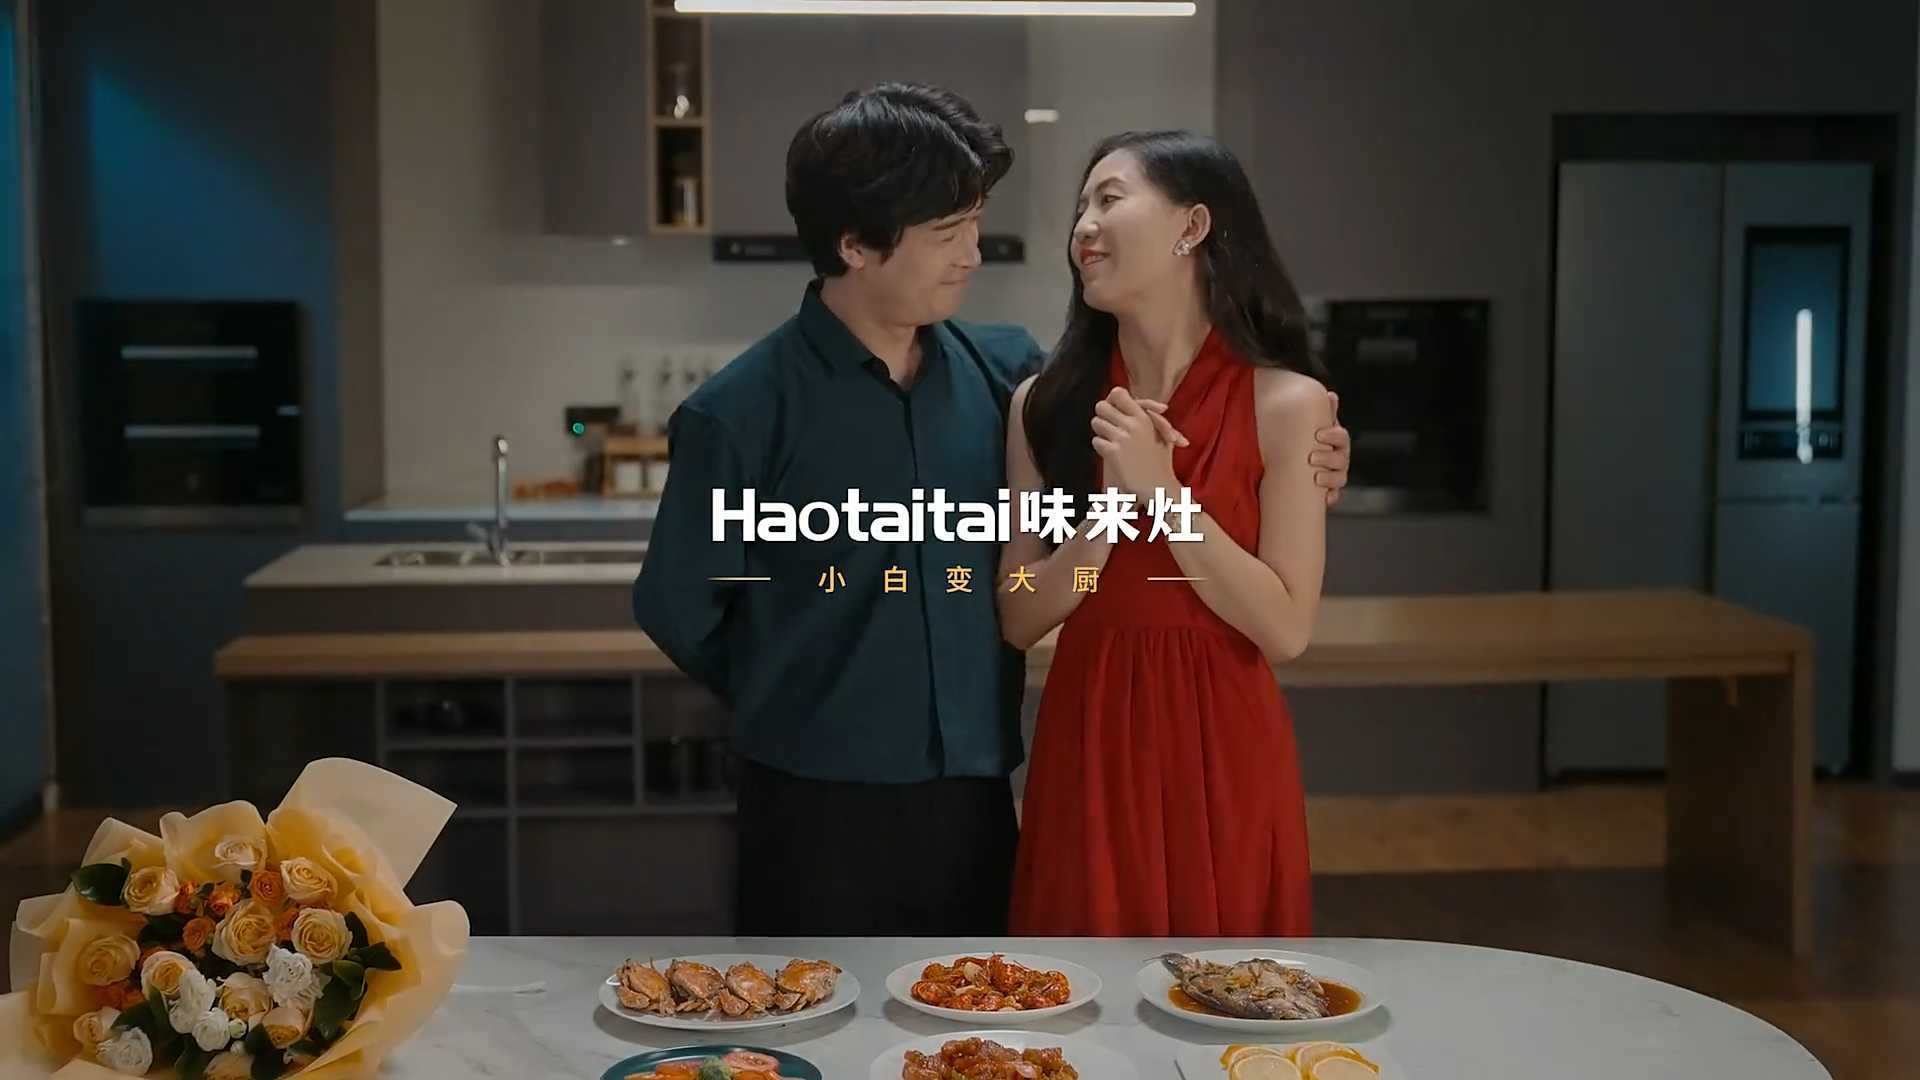 【Haotaitai】创意广告“我叫小白”